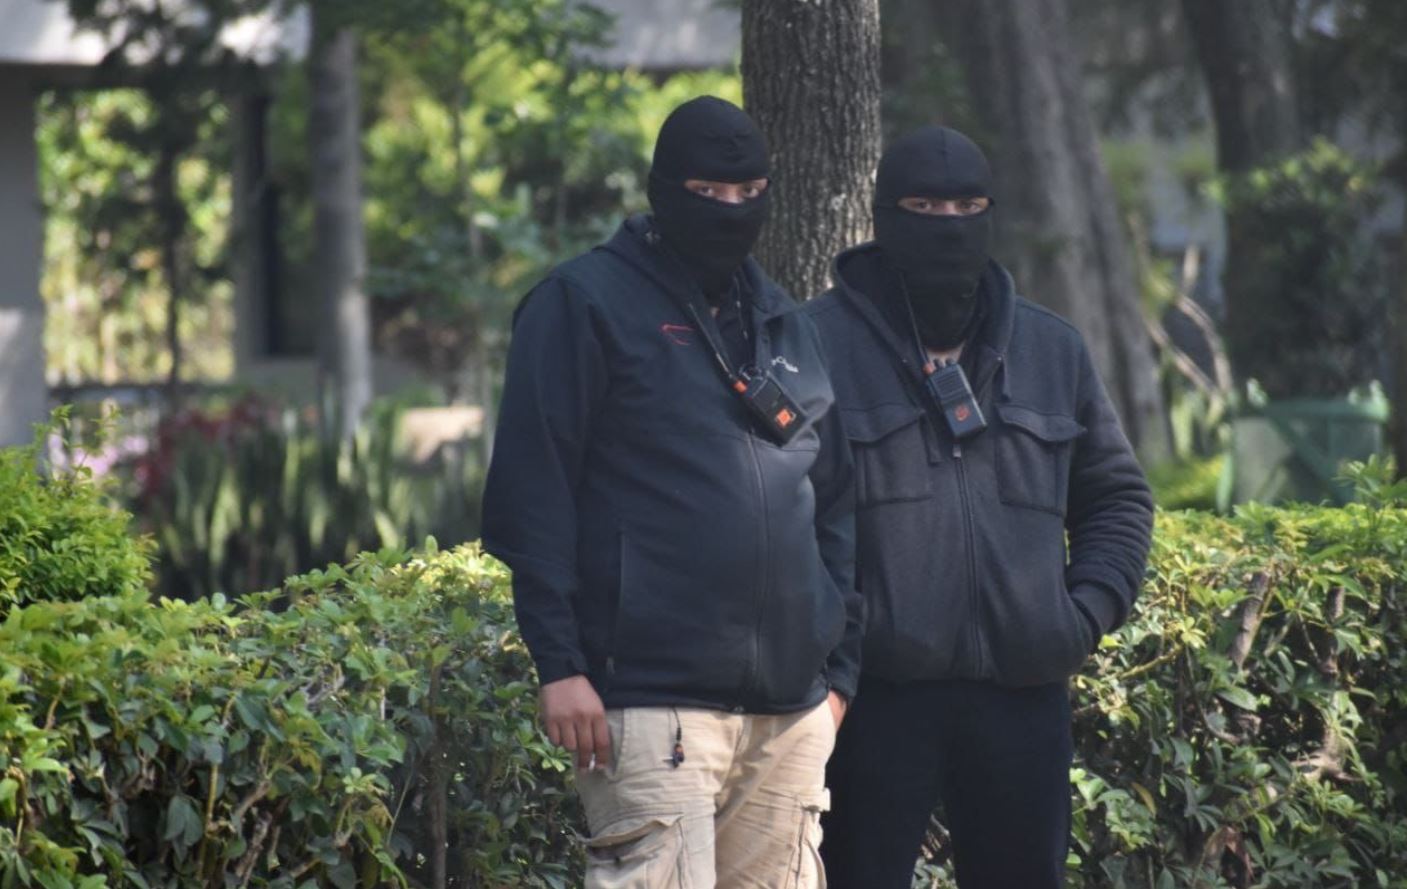 Hombres con los rostros cubiertos durante la elección de rector de la Usac en el Parque de la Industria. Los hombres supuestamente eran de la empresa de seguridad Toledo, que no está registrada. (Foto Prensa Libre: PNC)